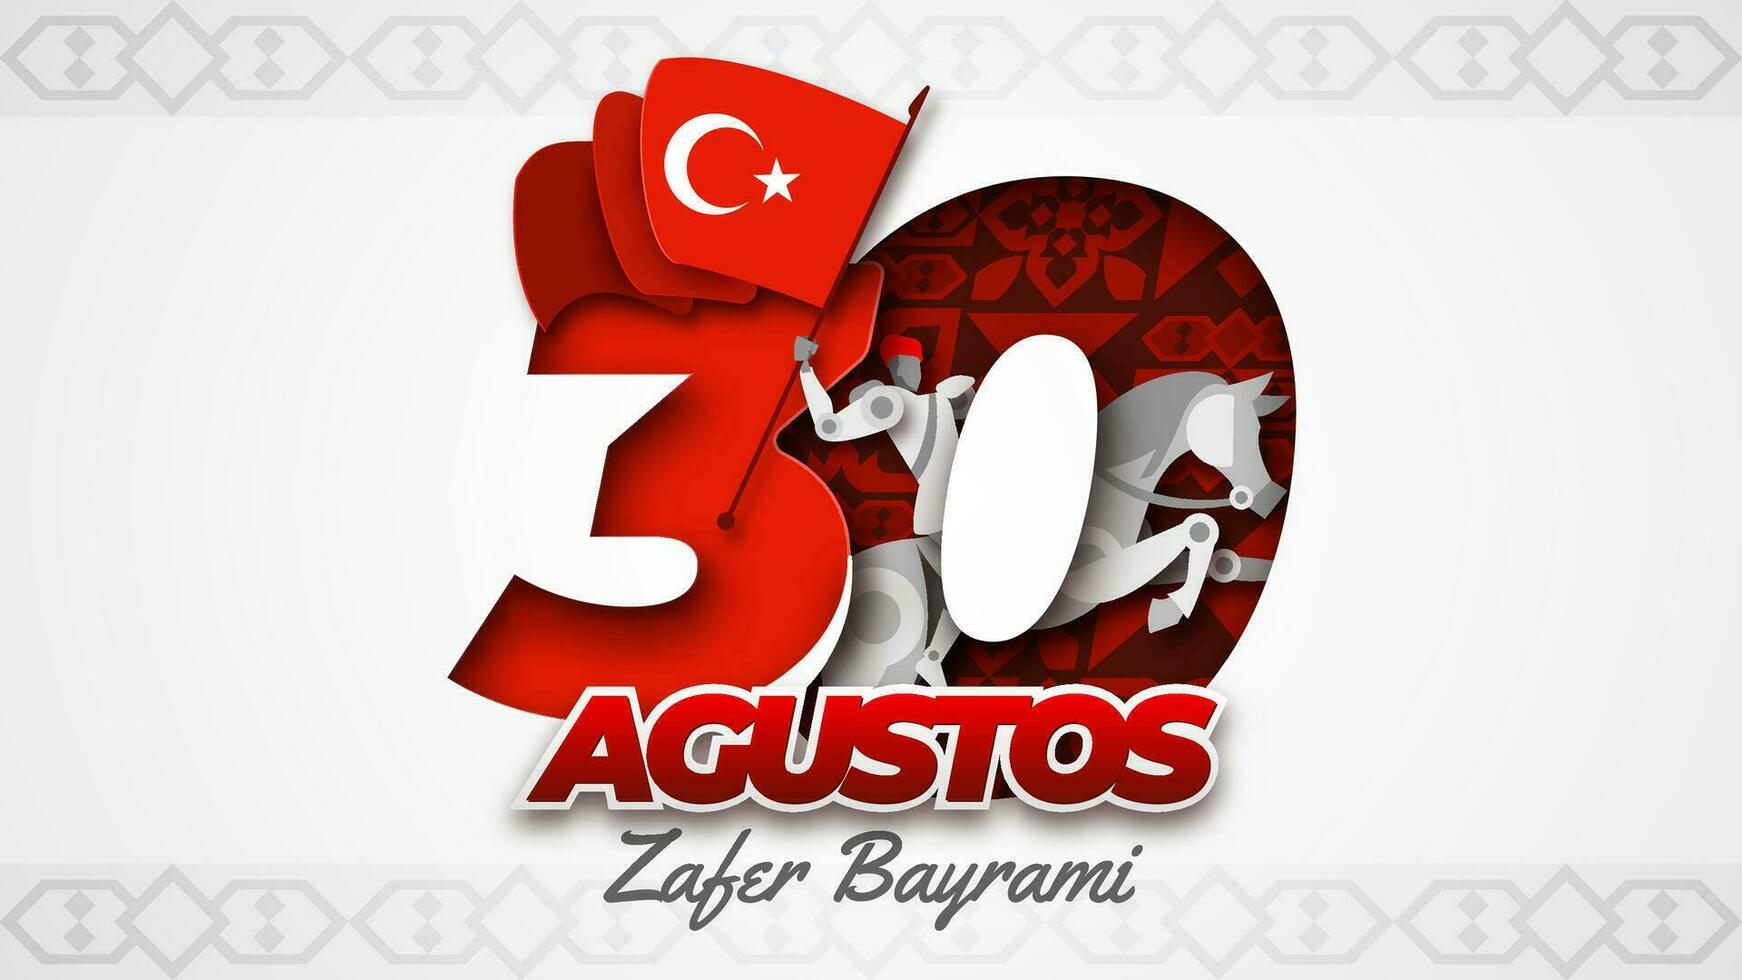 30 Agustos zafer Bayrami mit Papier Schnitt Stil Illustration vektor